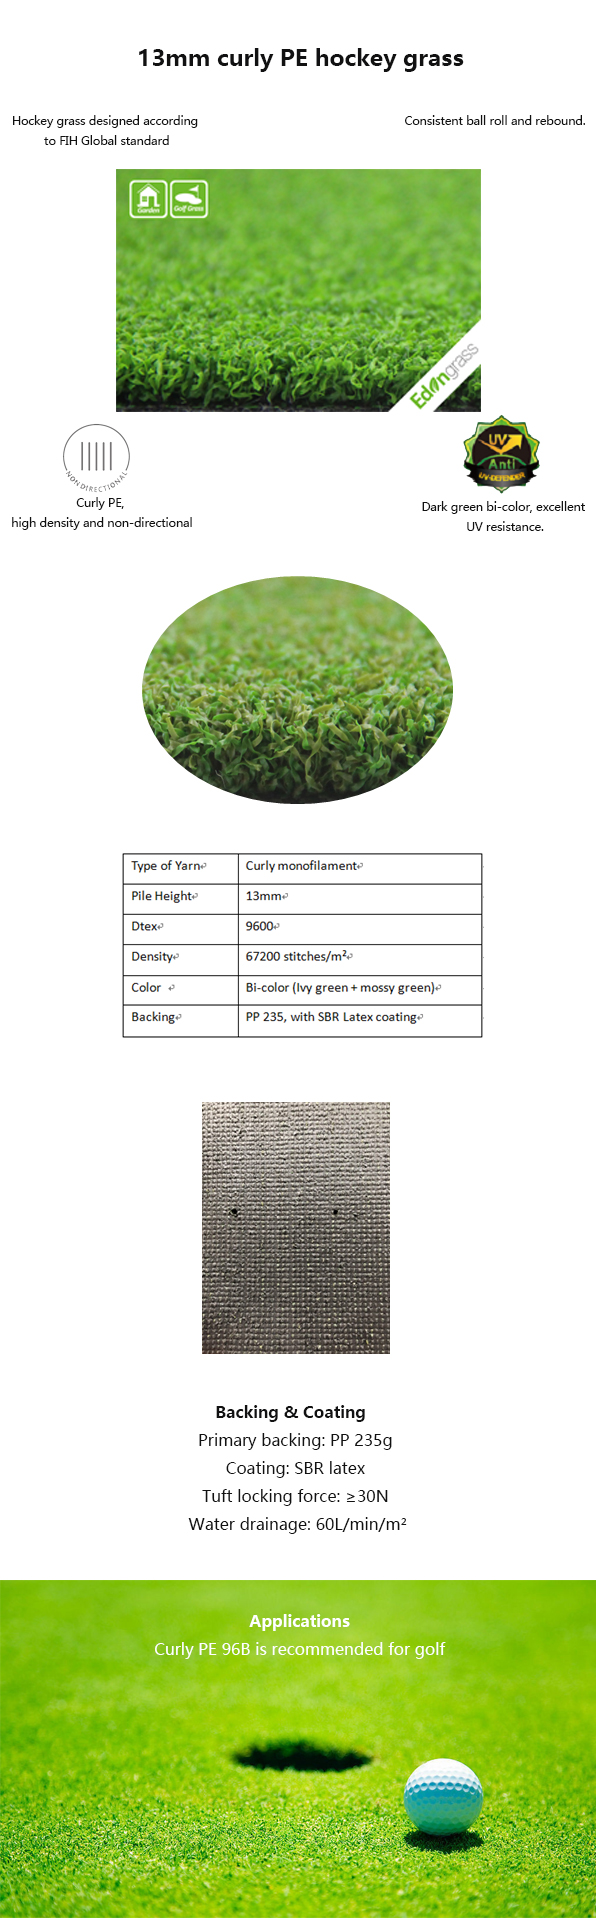 Desgaste artificial de la altura de la hierba el 13m del golf sintético del césped del putting green - resistente 0